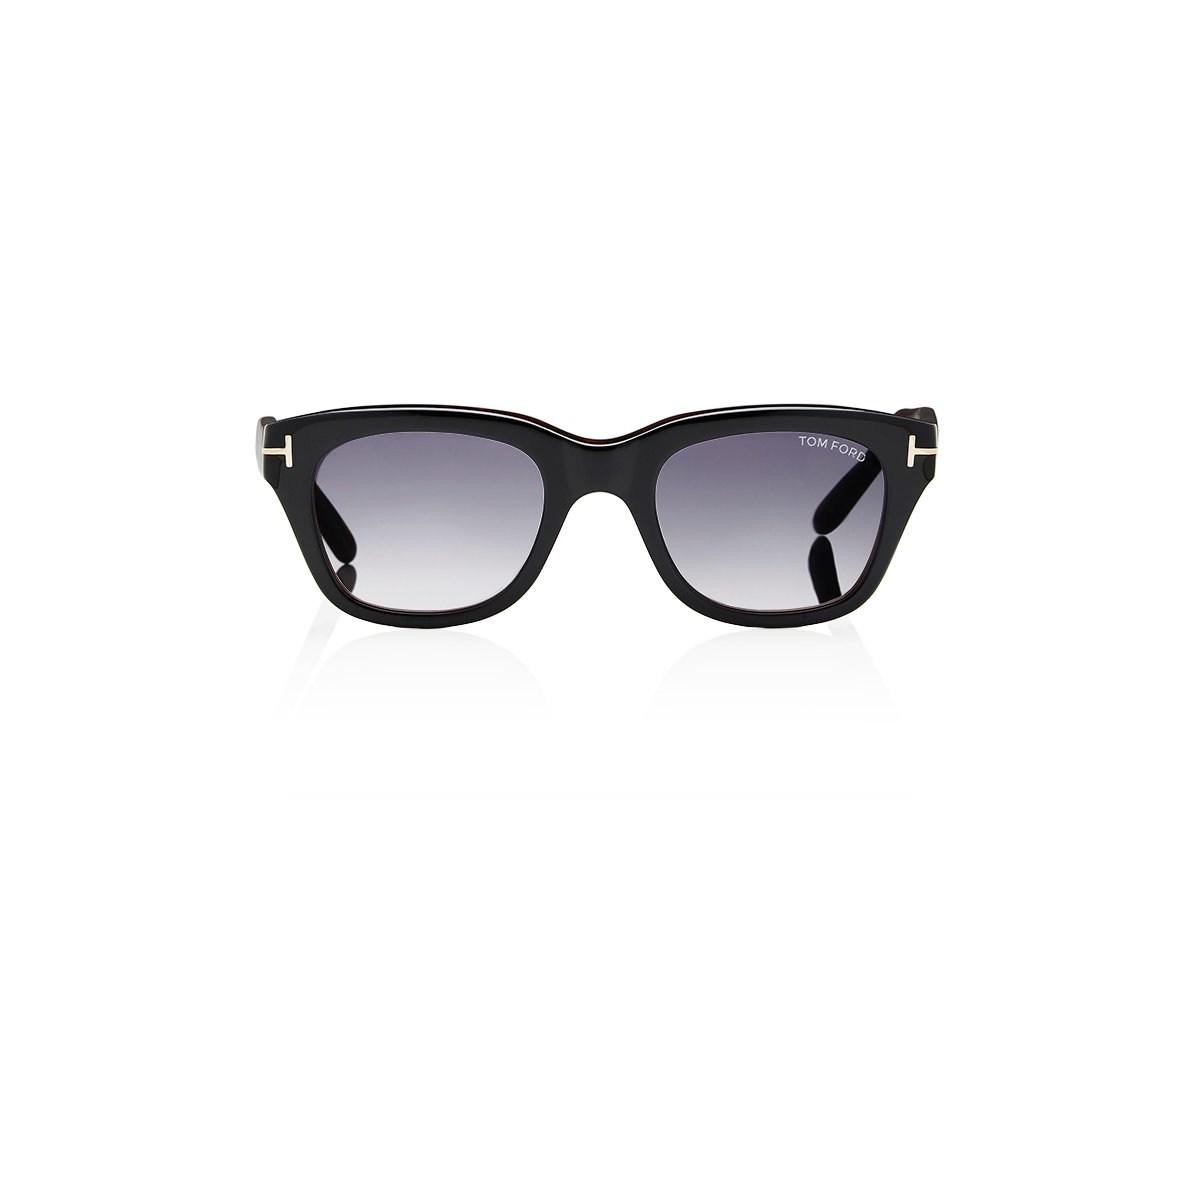 Lyst - Tom Ford Snowdon Sunglasses in Black for Men